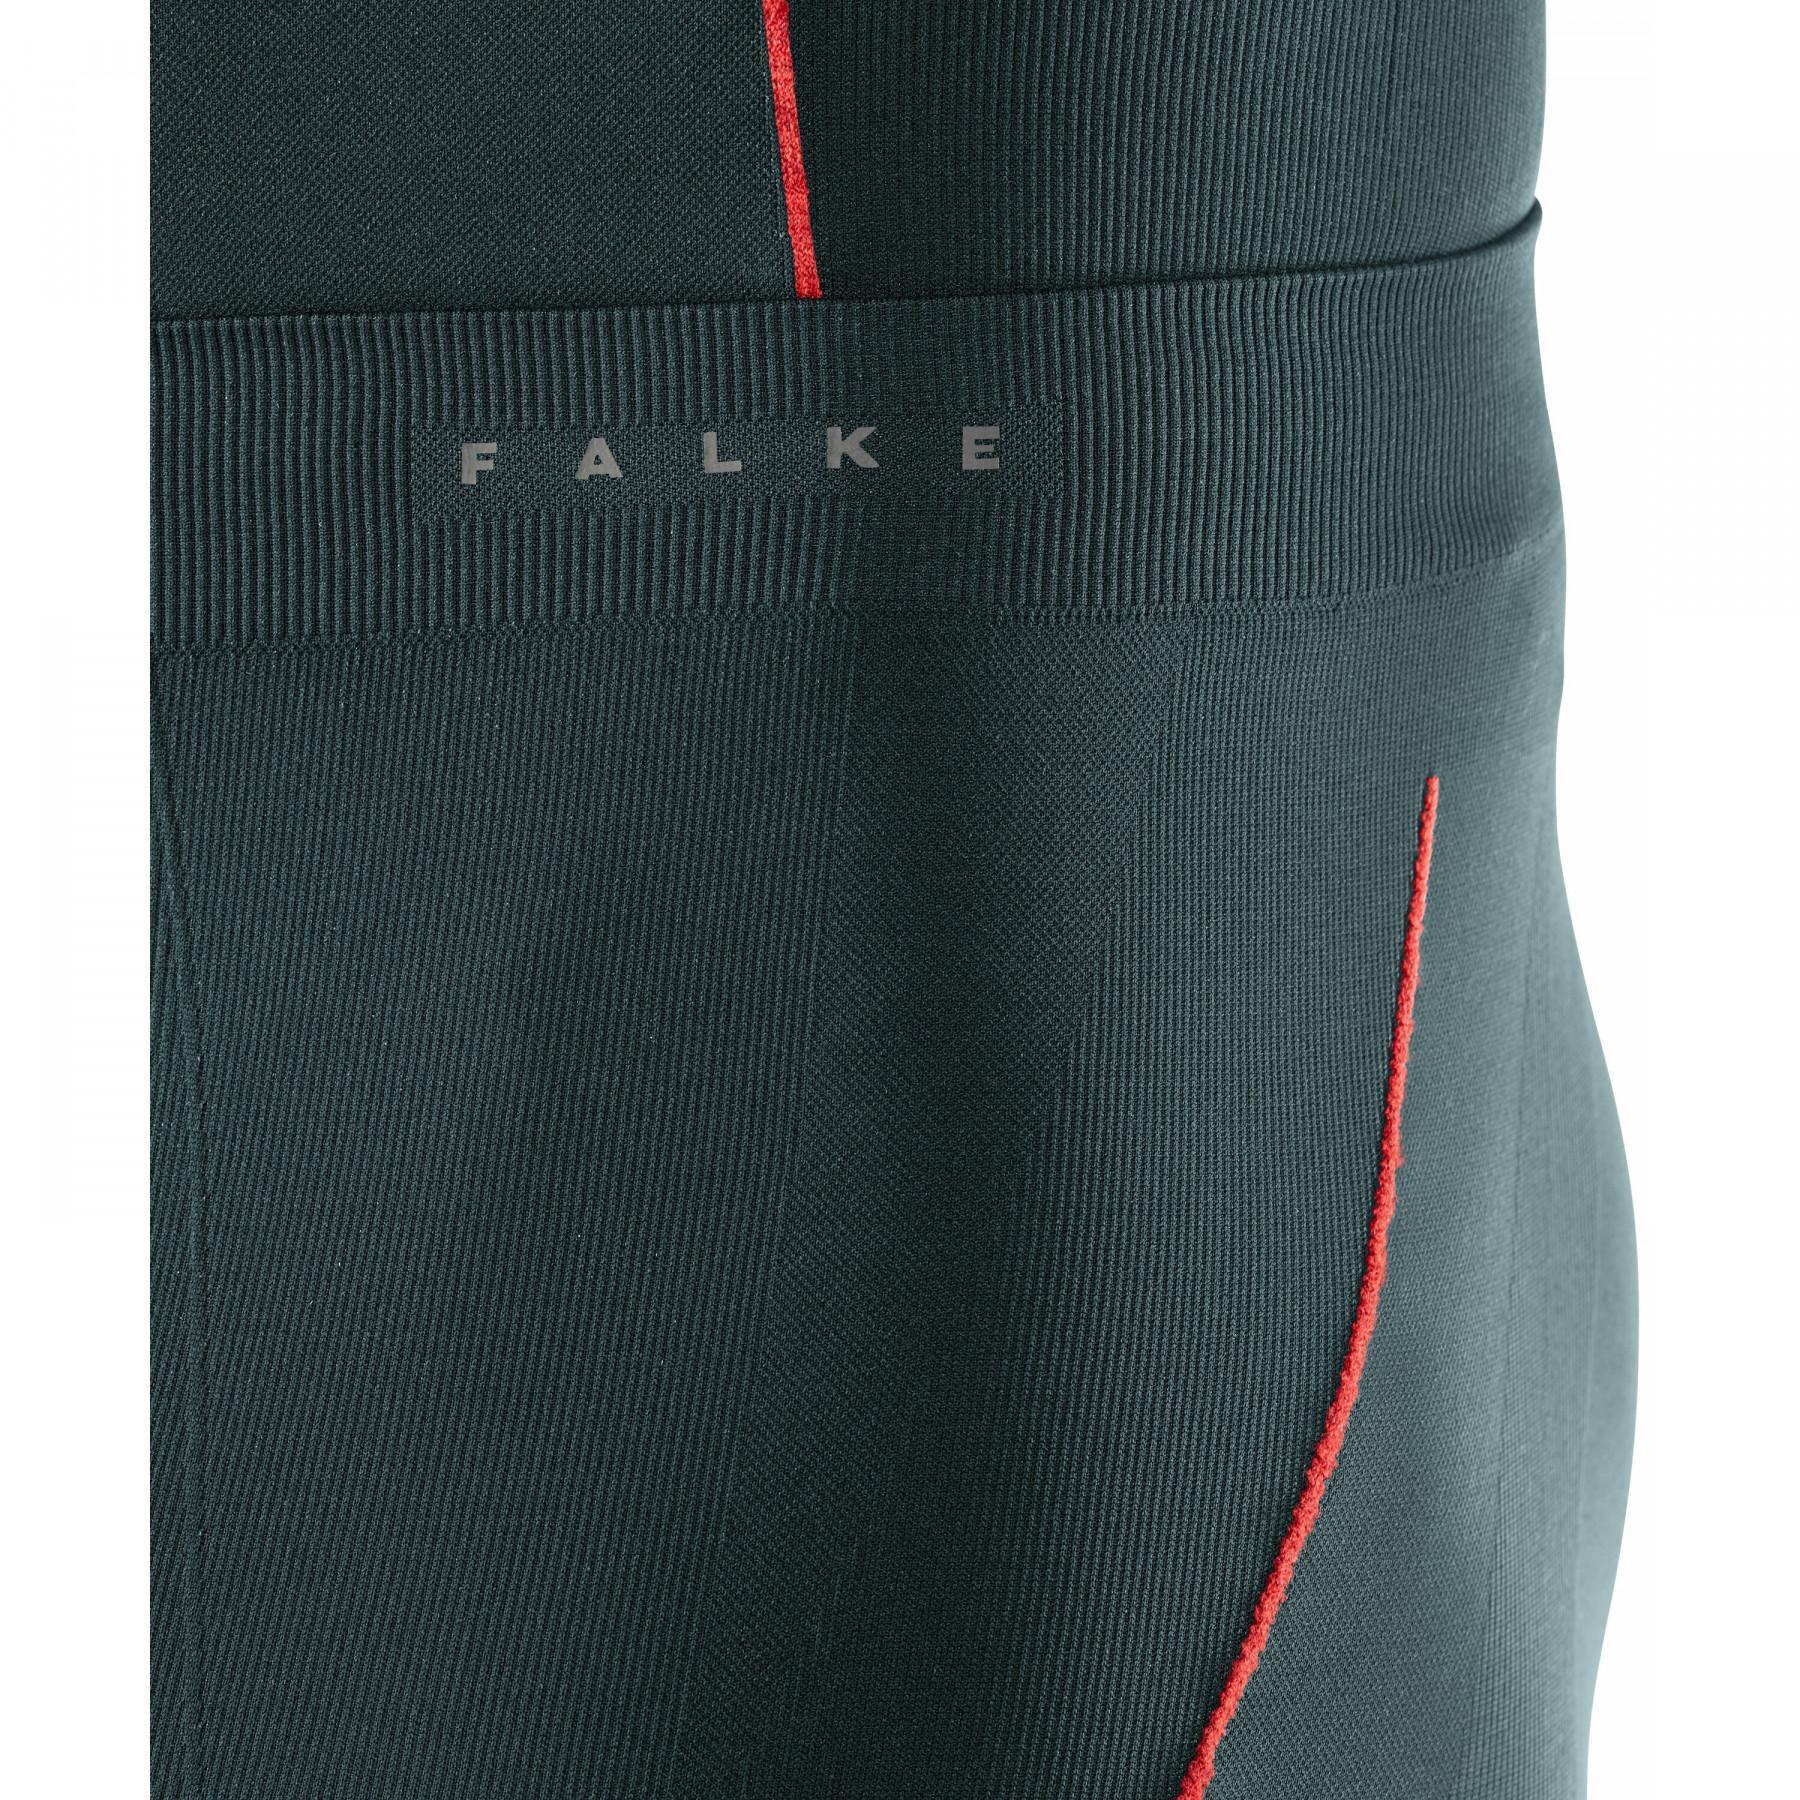 Underpants Falke 3/4 Warm